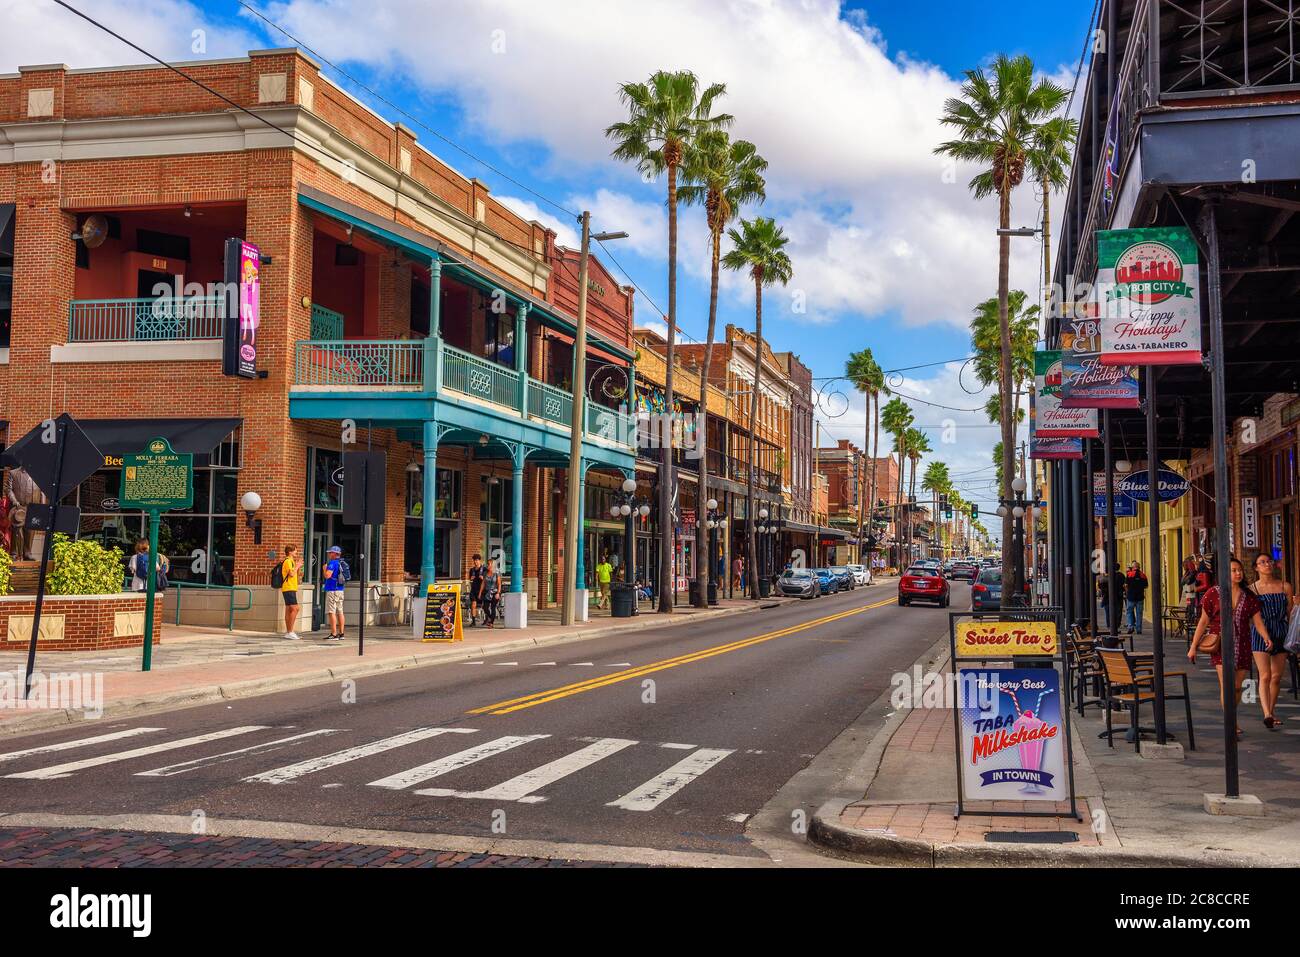 Ybor City, Tampa Bay, Florida. EE.UU. - 11 de enero de 2020 : famosa 7th Avenue en la histórica ciudad de Ybor, ahora designada como un hito Histórico Nacional D Foto de stock